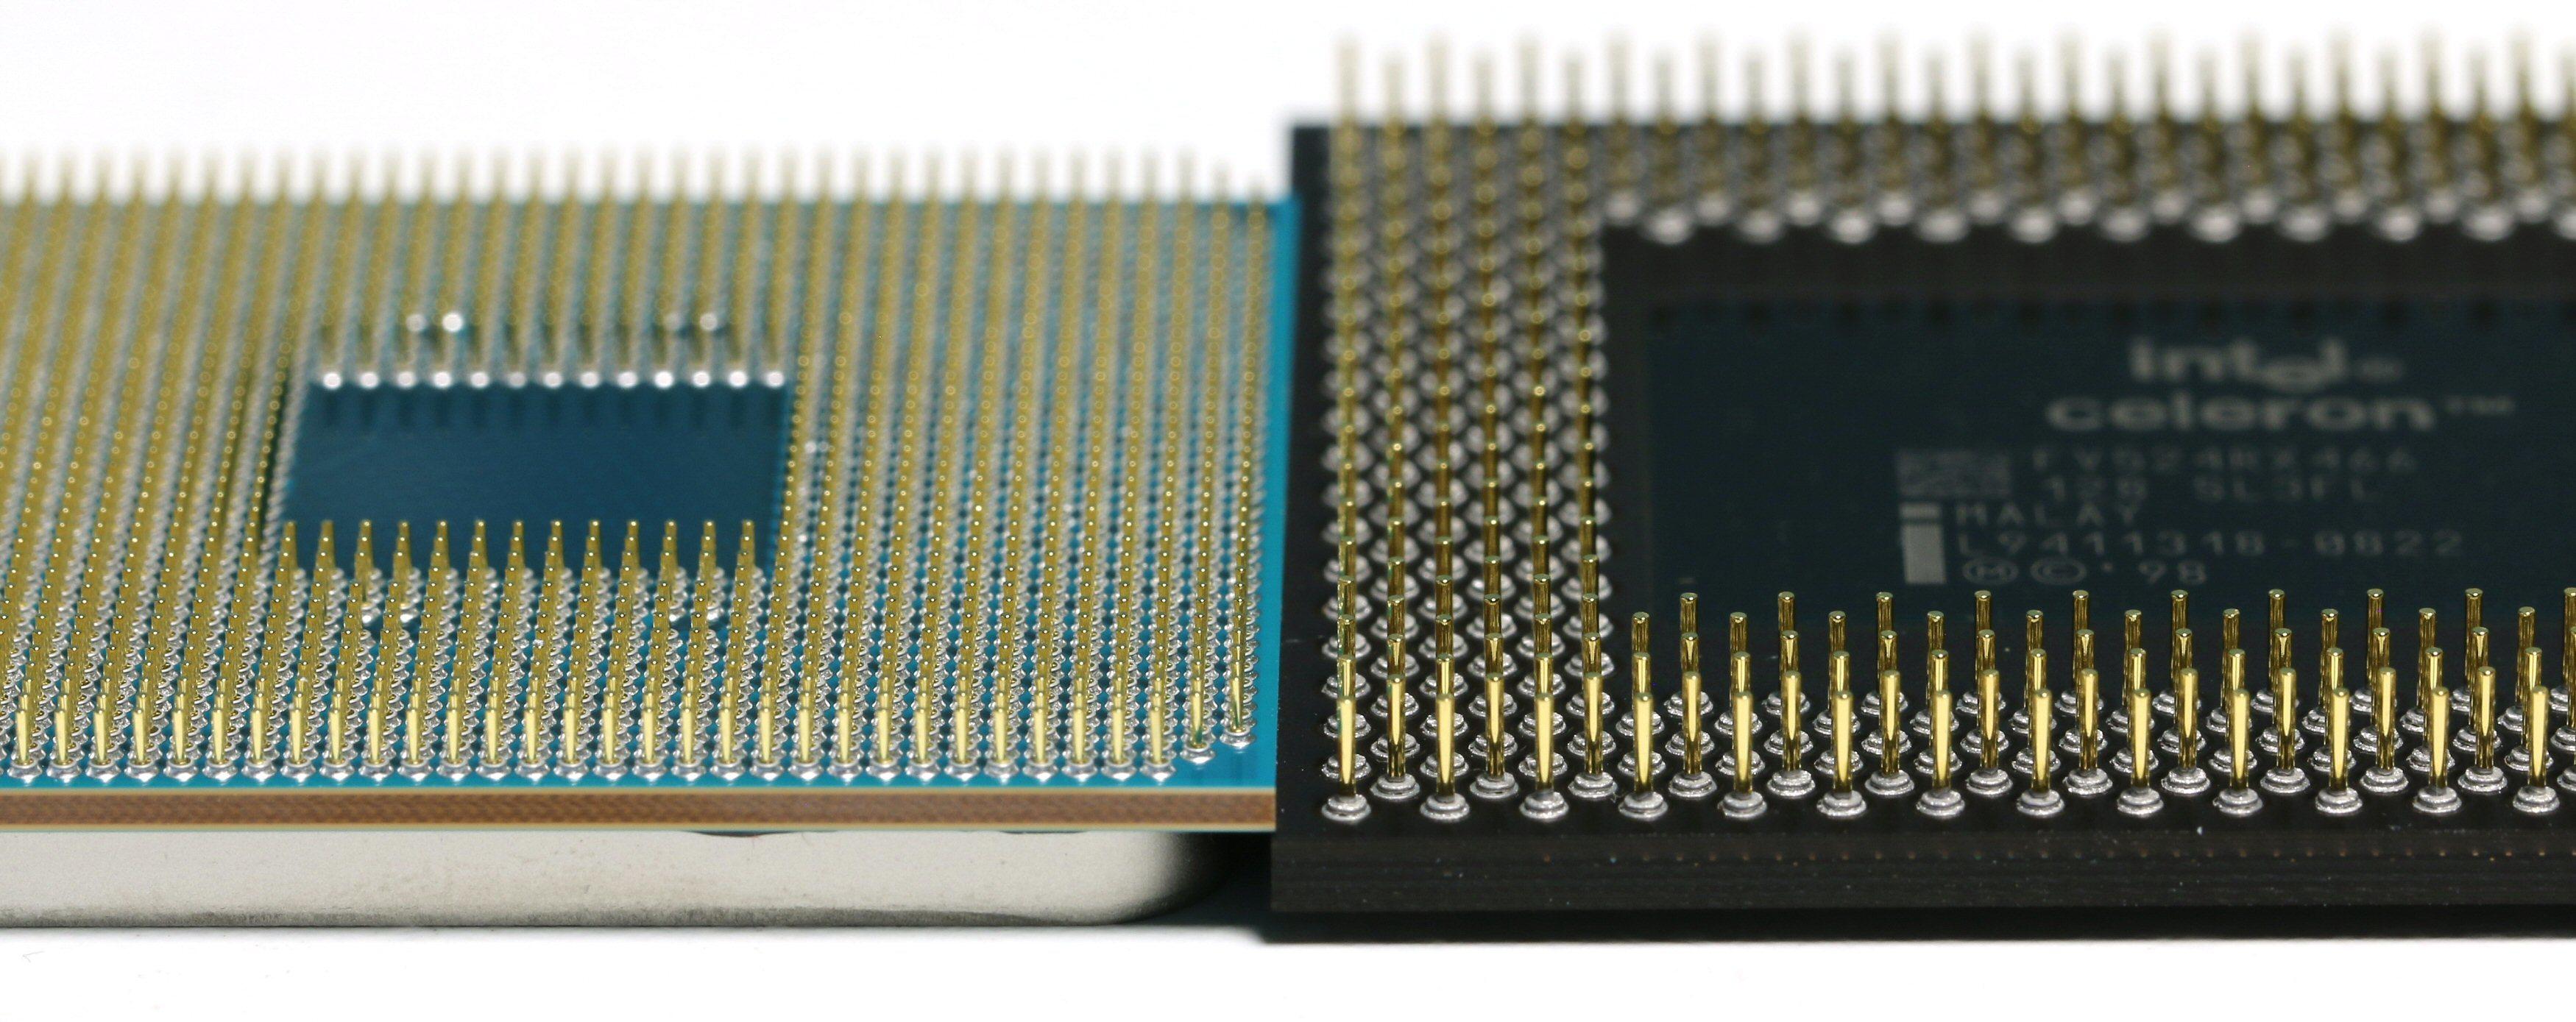 Pinnene pakkes litt tettere på nye AMD Ryzen enn på den gamle Celeron-prosessoren lagd for Socket 370.